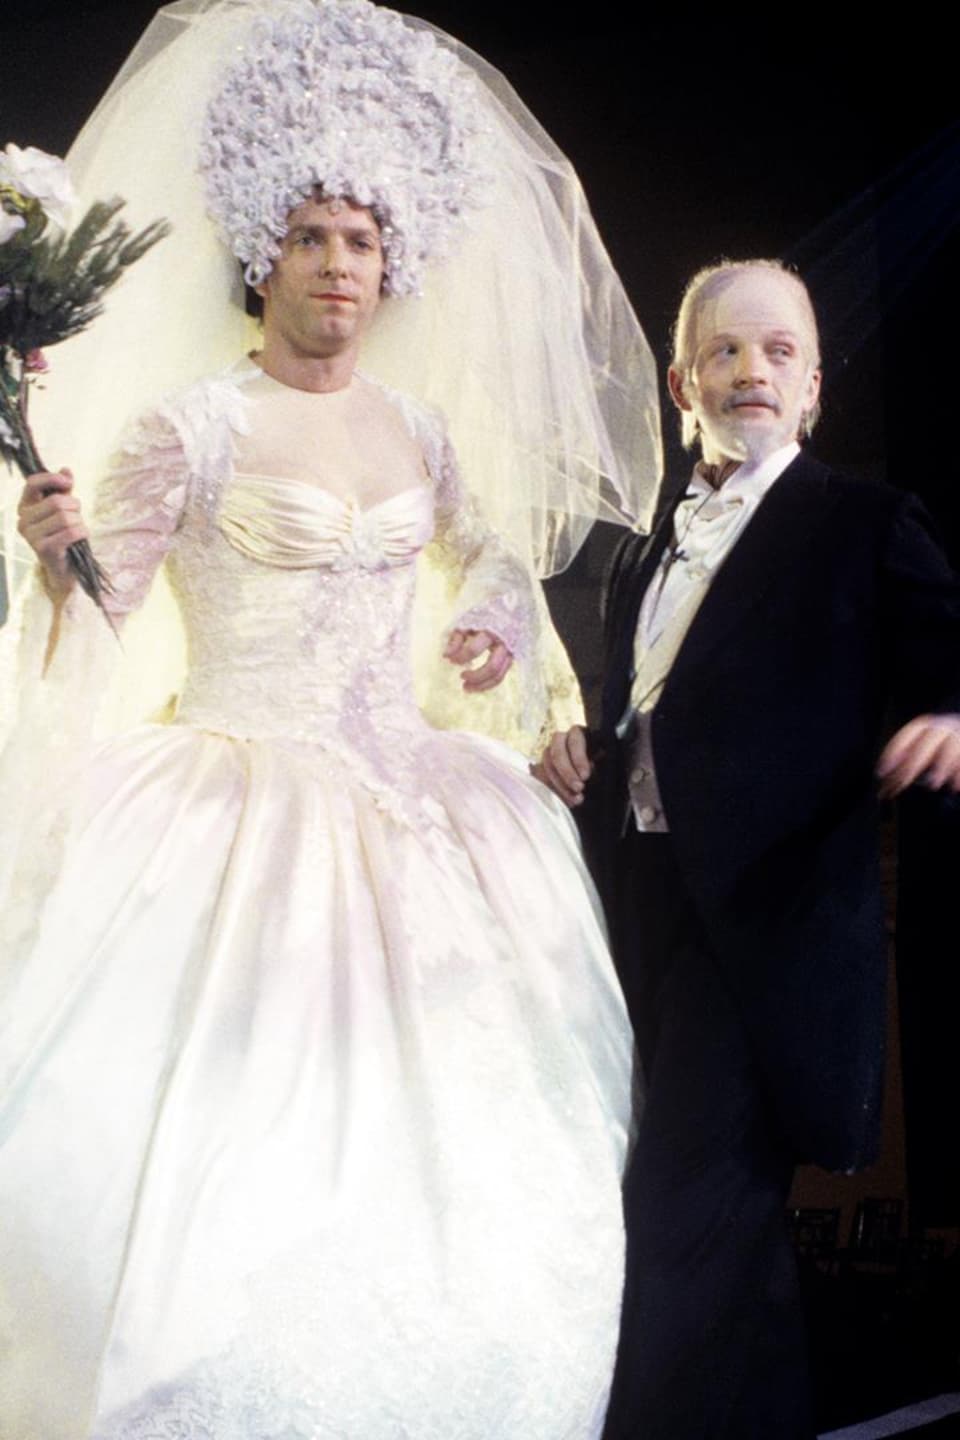 Vêtue d'une robe de mariée, Céline Dion (Patrice L'Écuyer) est debout, au bras de René Angelil (André-Philippe Gagnon).